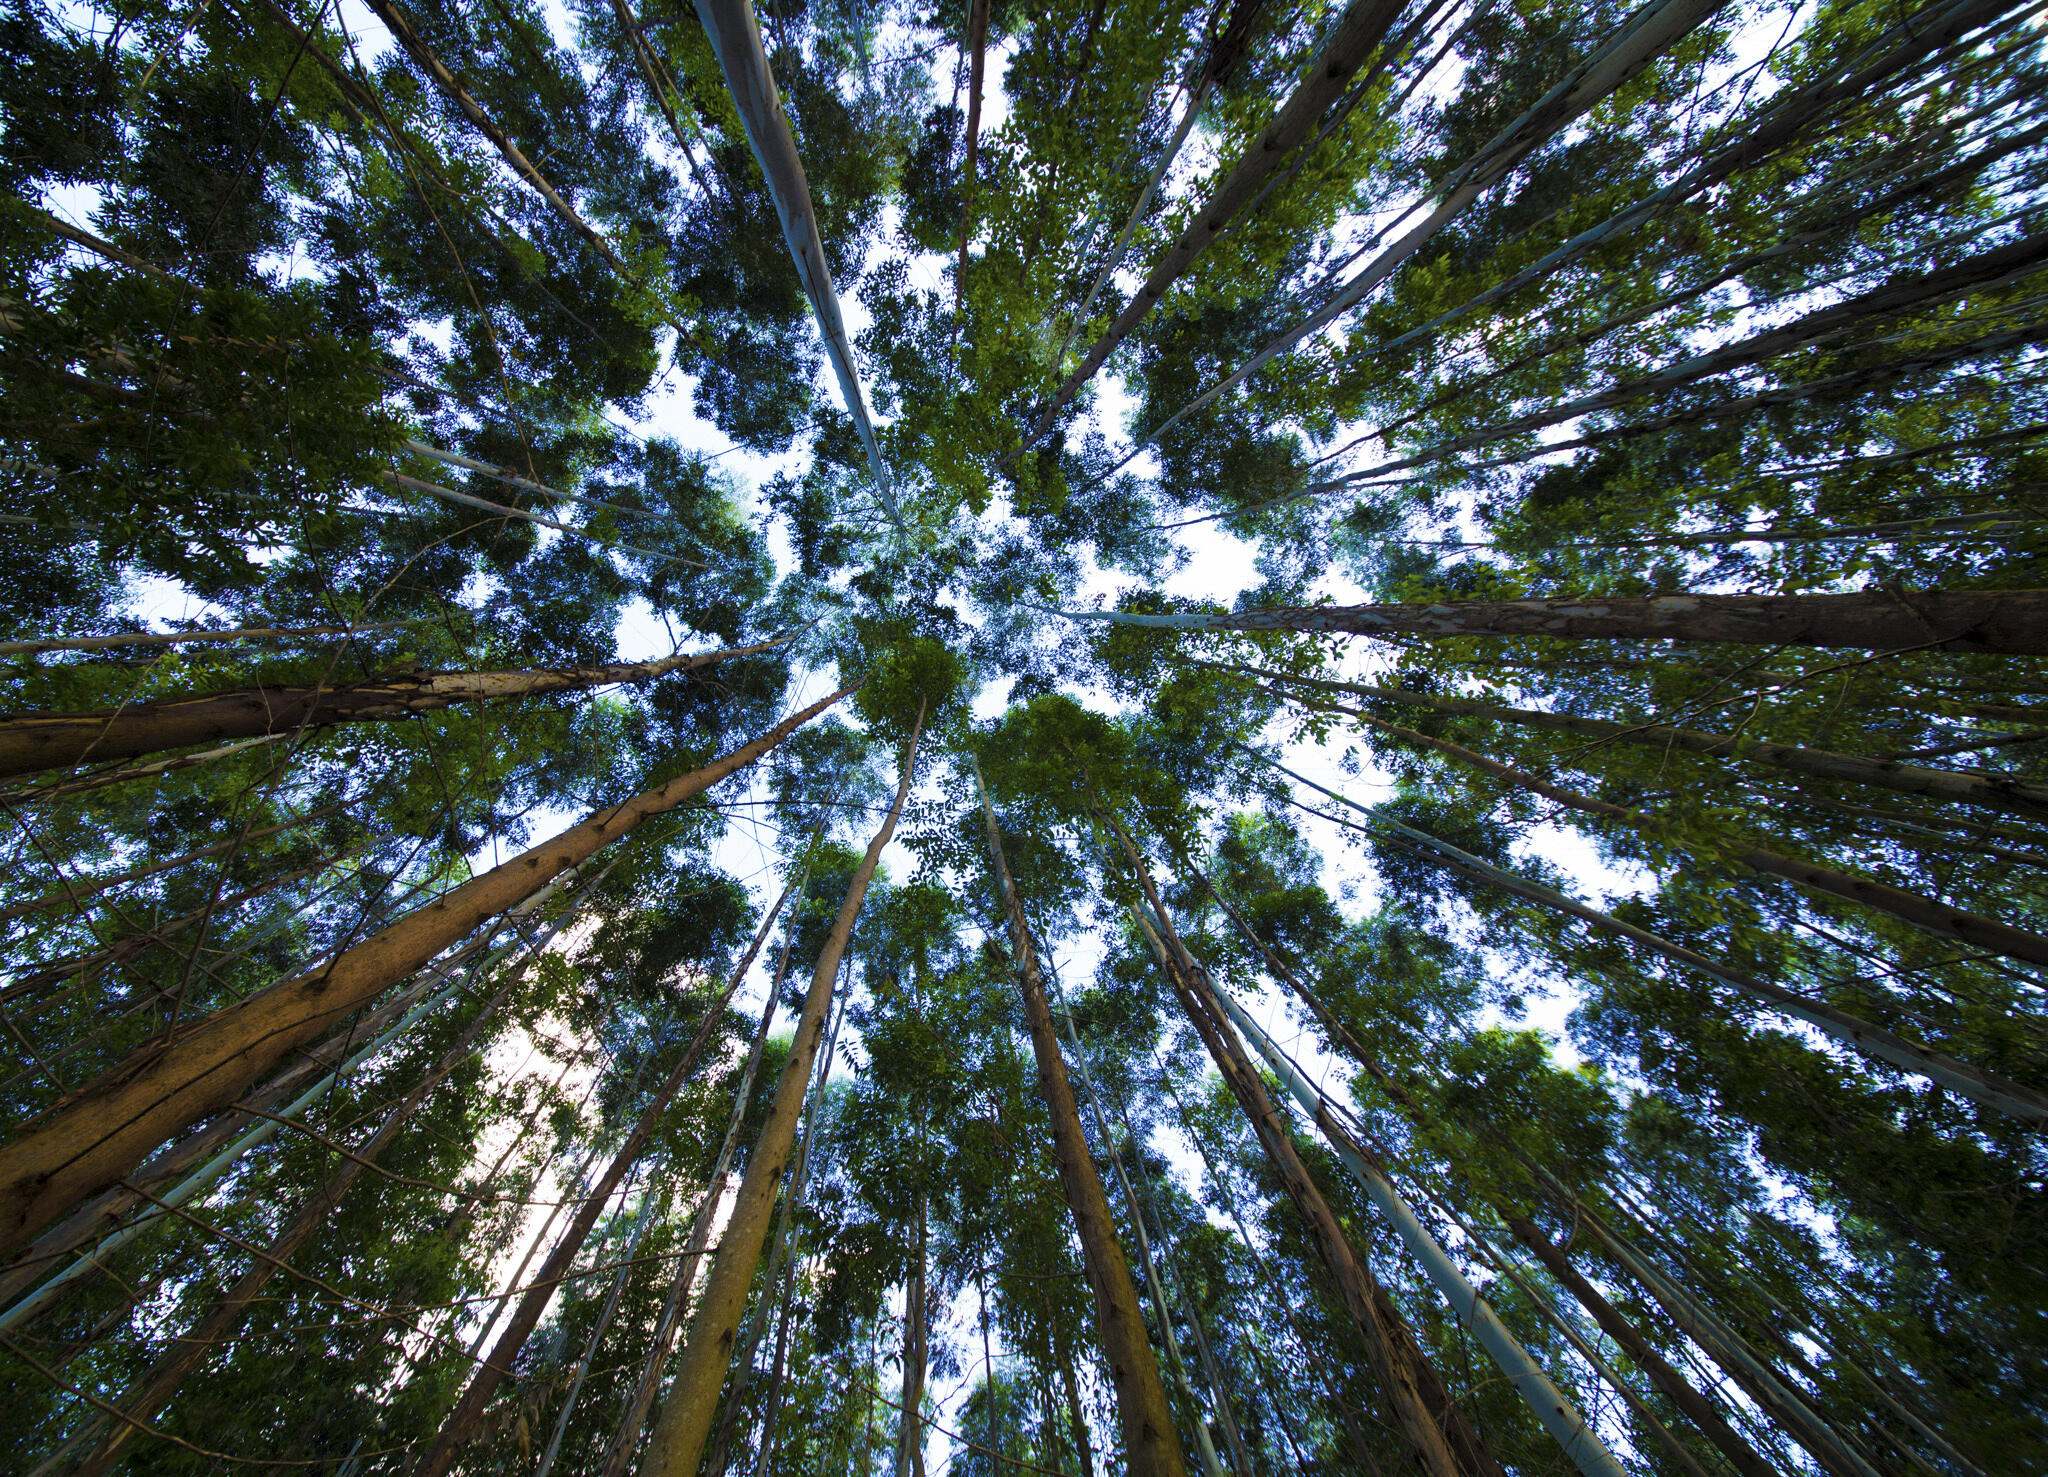 An upwards look towards a canopy of trees.